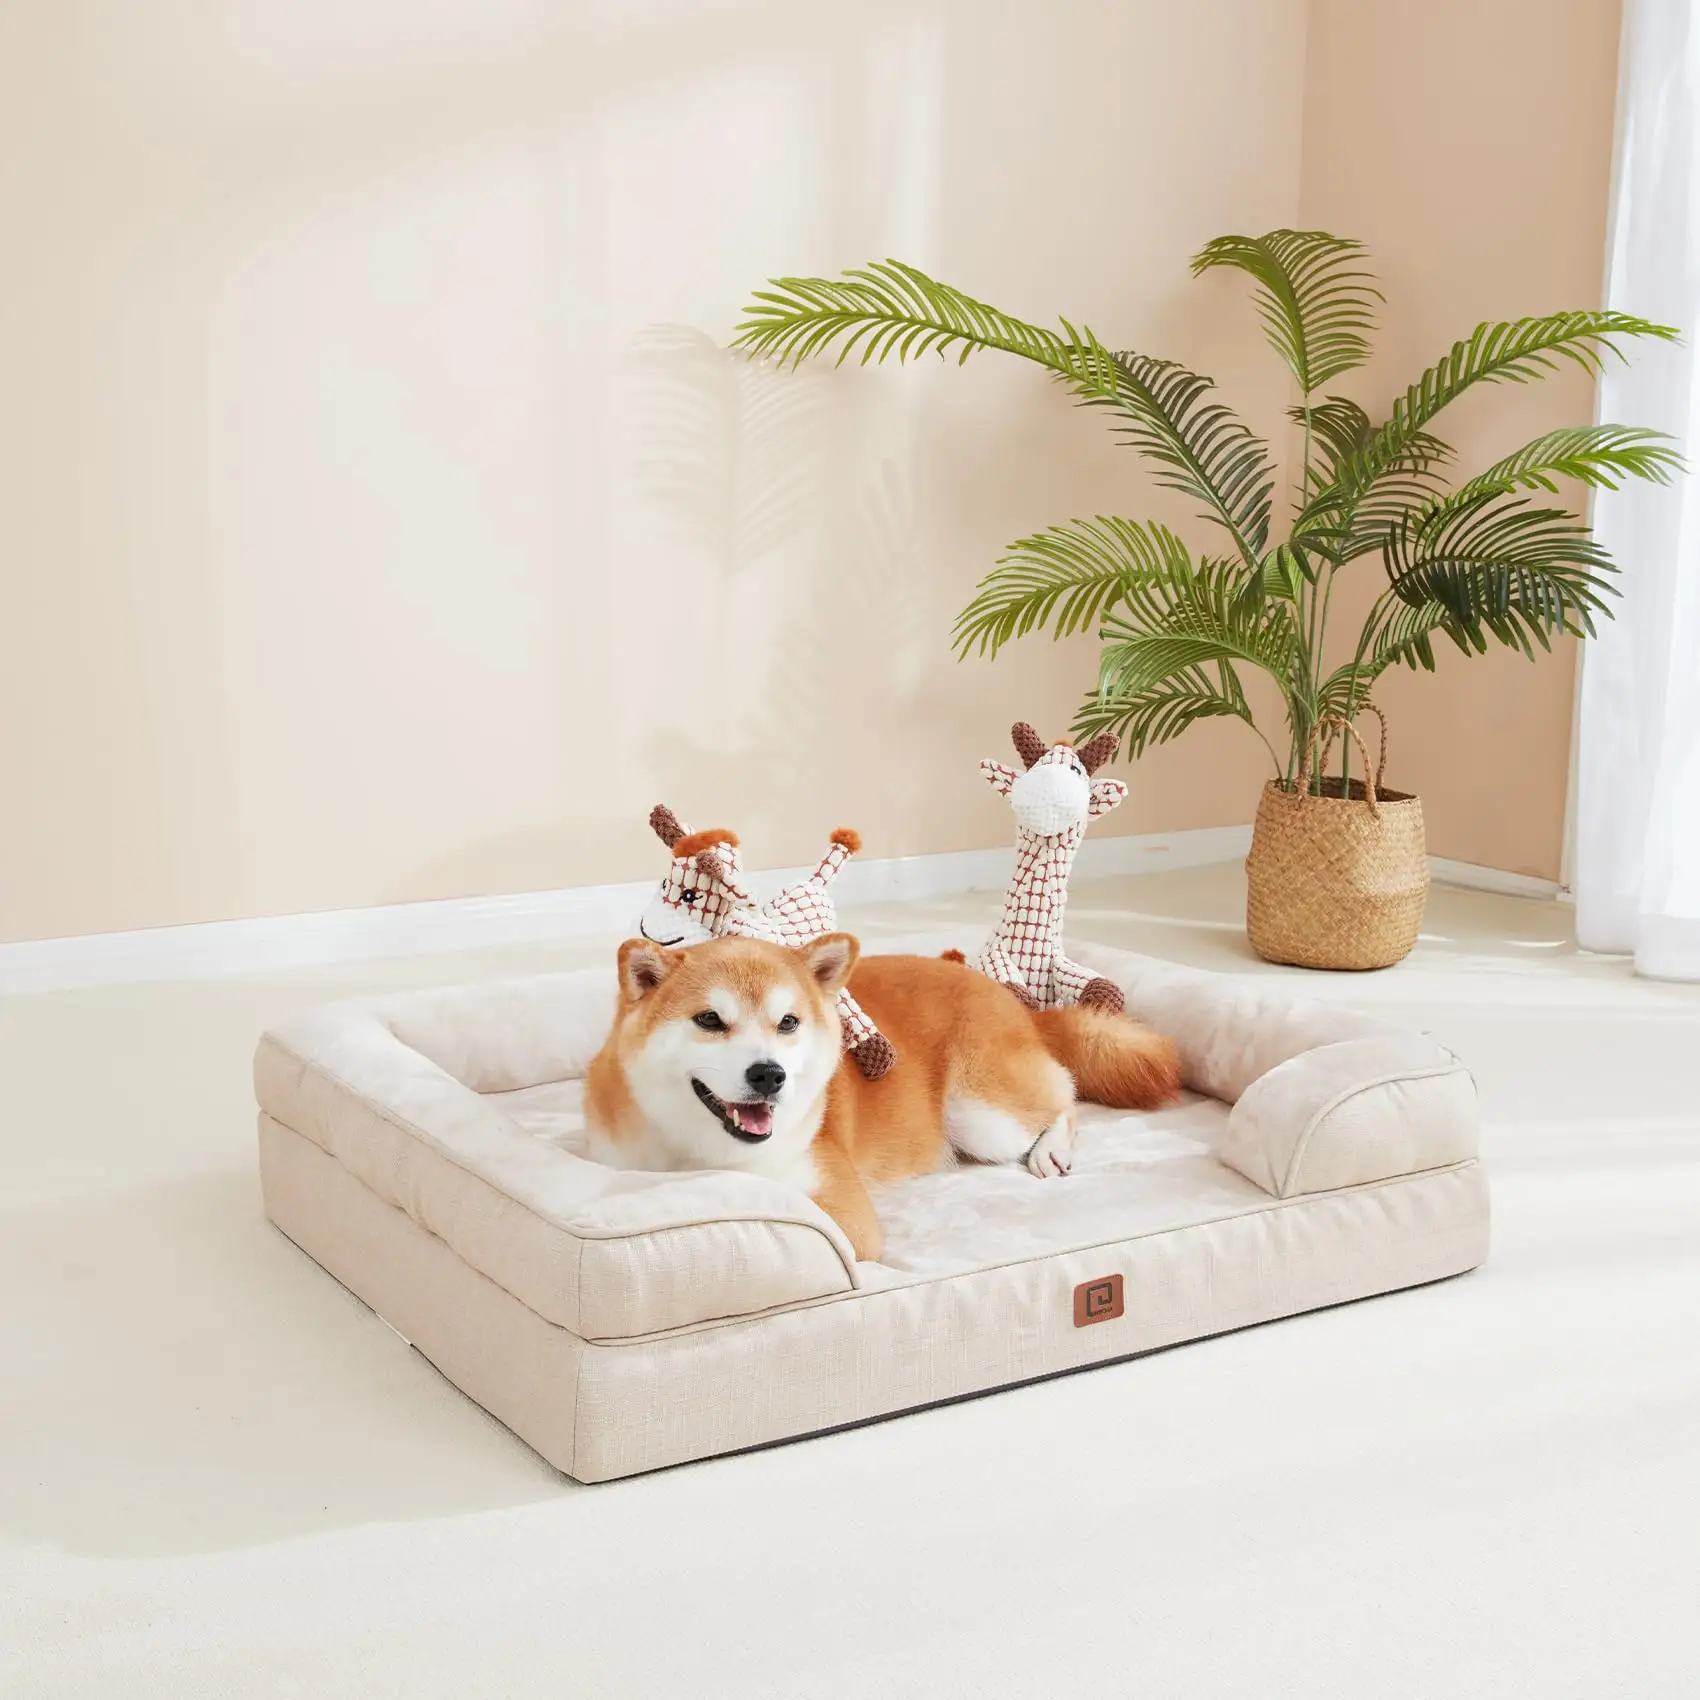 Smail Dogs를 위한 정형외과 개 침대, 30.0 _ L x 20.0 _ W x 6.5 _ th 베이지 방수 메모리 폼 측면이있는 개 침대